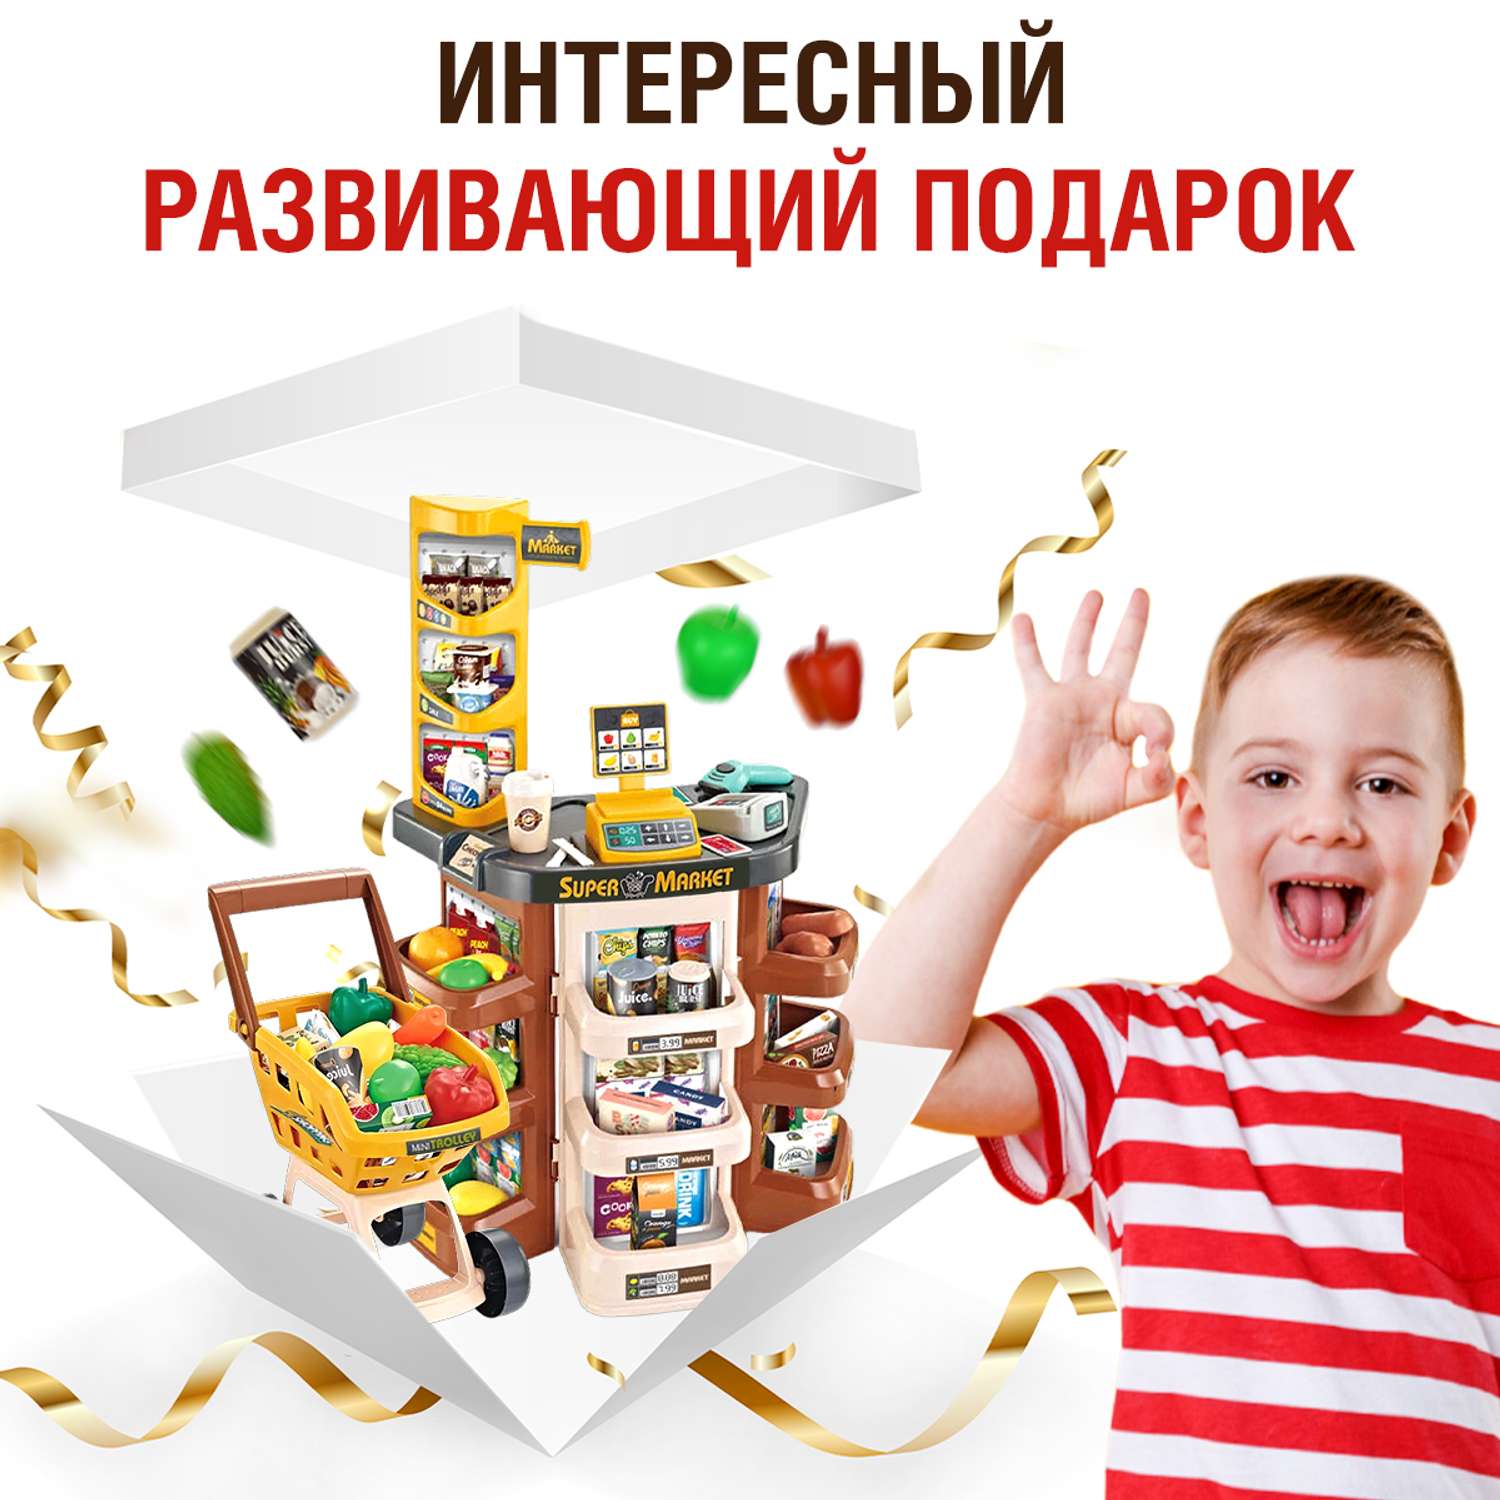 Игровой набор FAIRYMARY Супермаркет с тележкой и продуктами - фото 7